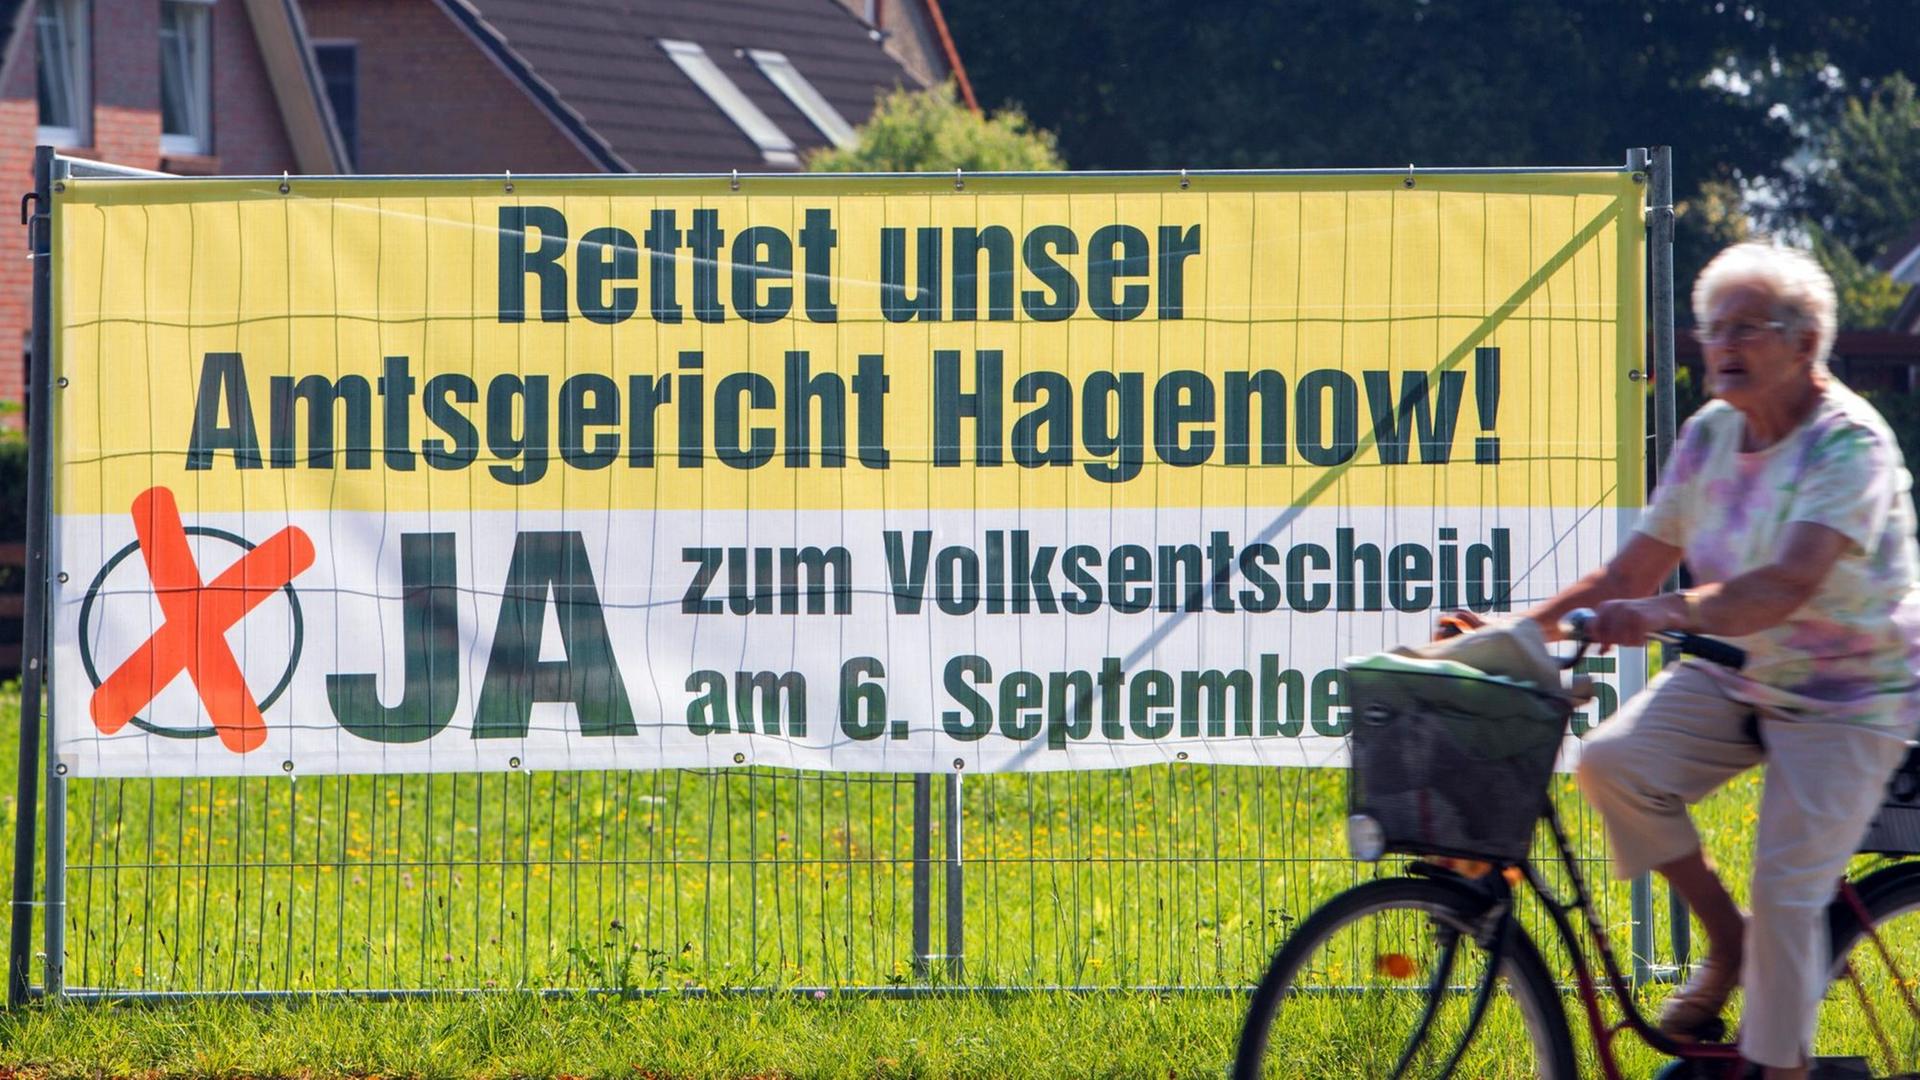 Plakat hängt an einem Zaun, eine Frau auf einem Rad fährt vorbei, Aufschrift auf dem Plakat: "Rettet unser Amtsgericht Hagenow! Ja zum Volksentscheid am 6. September"